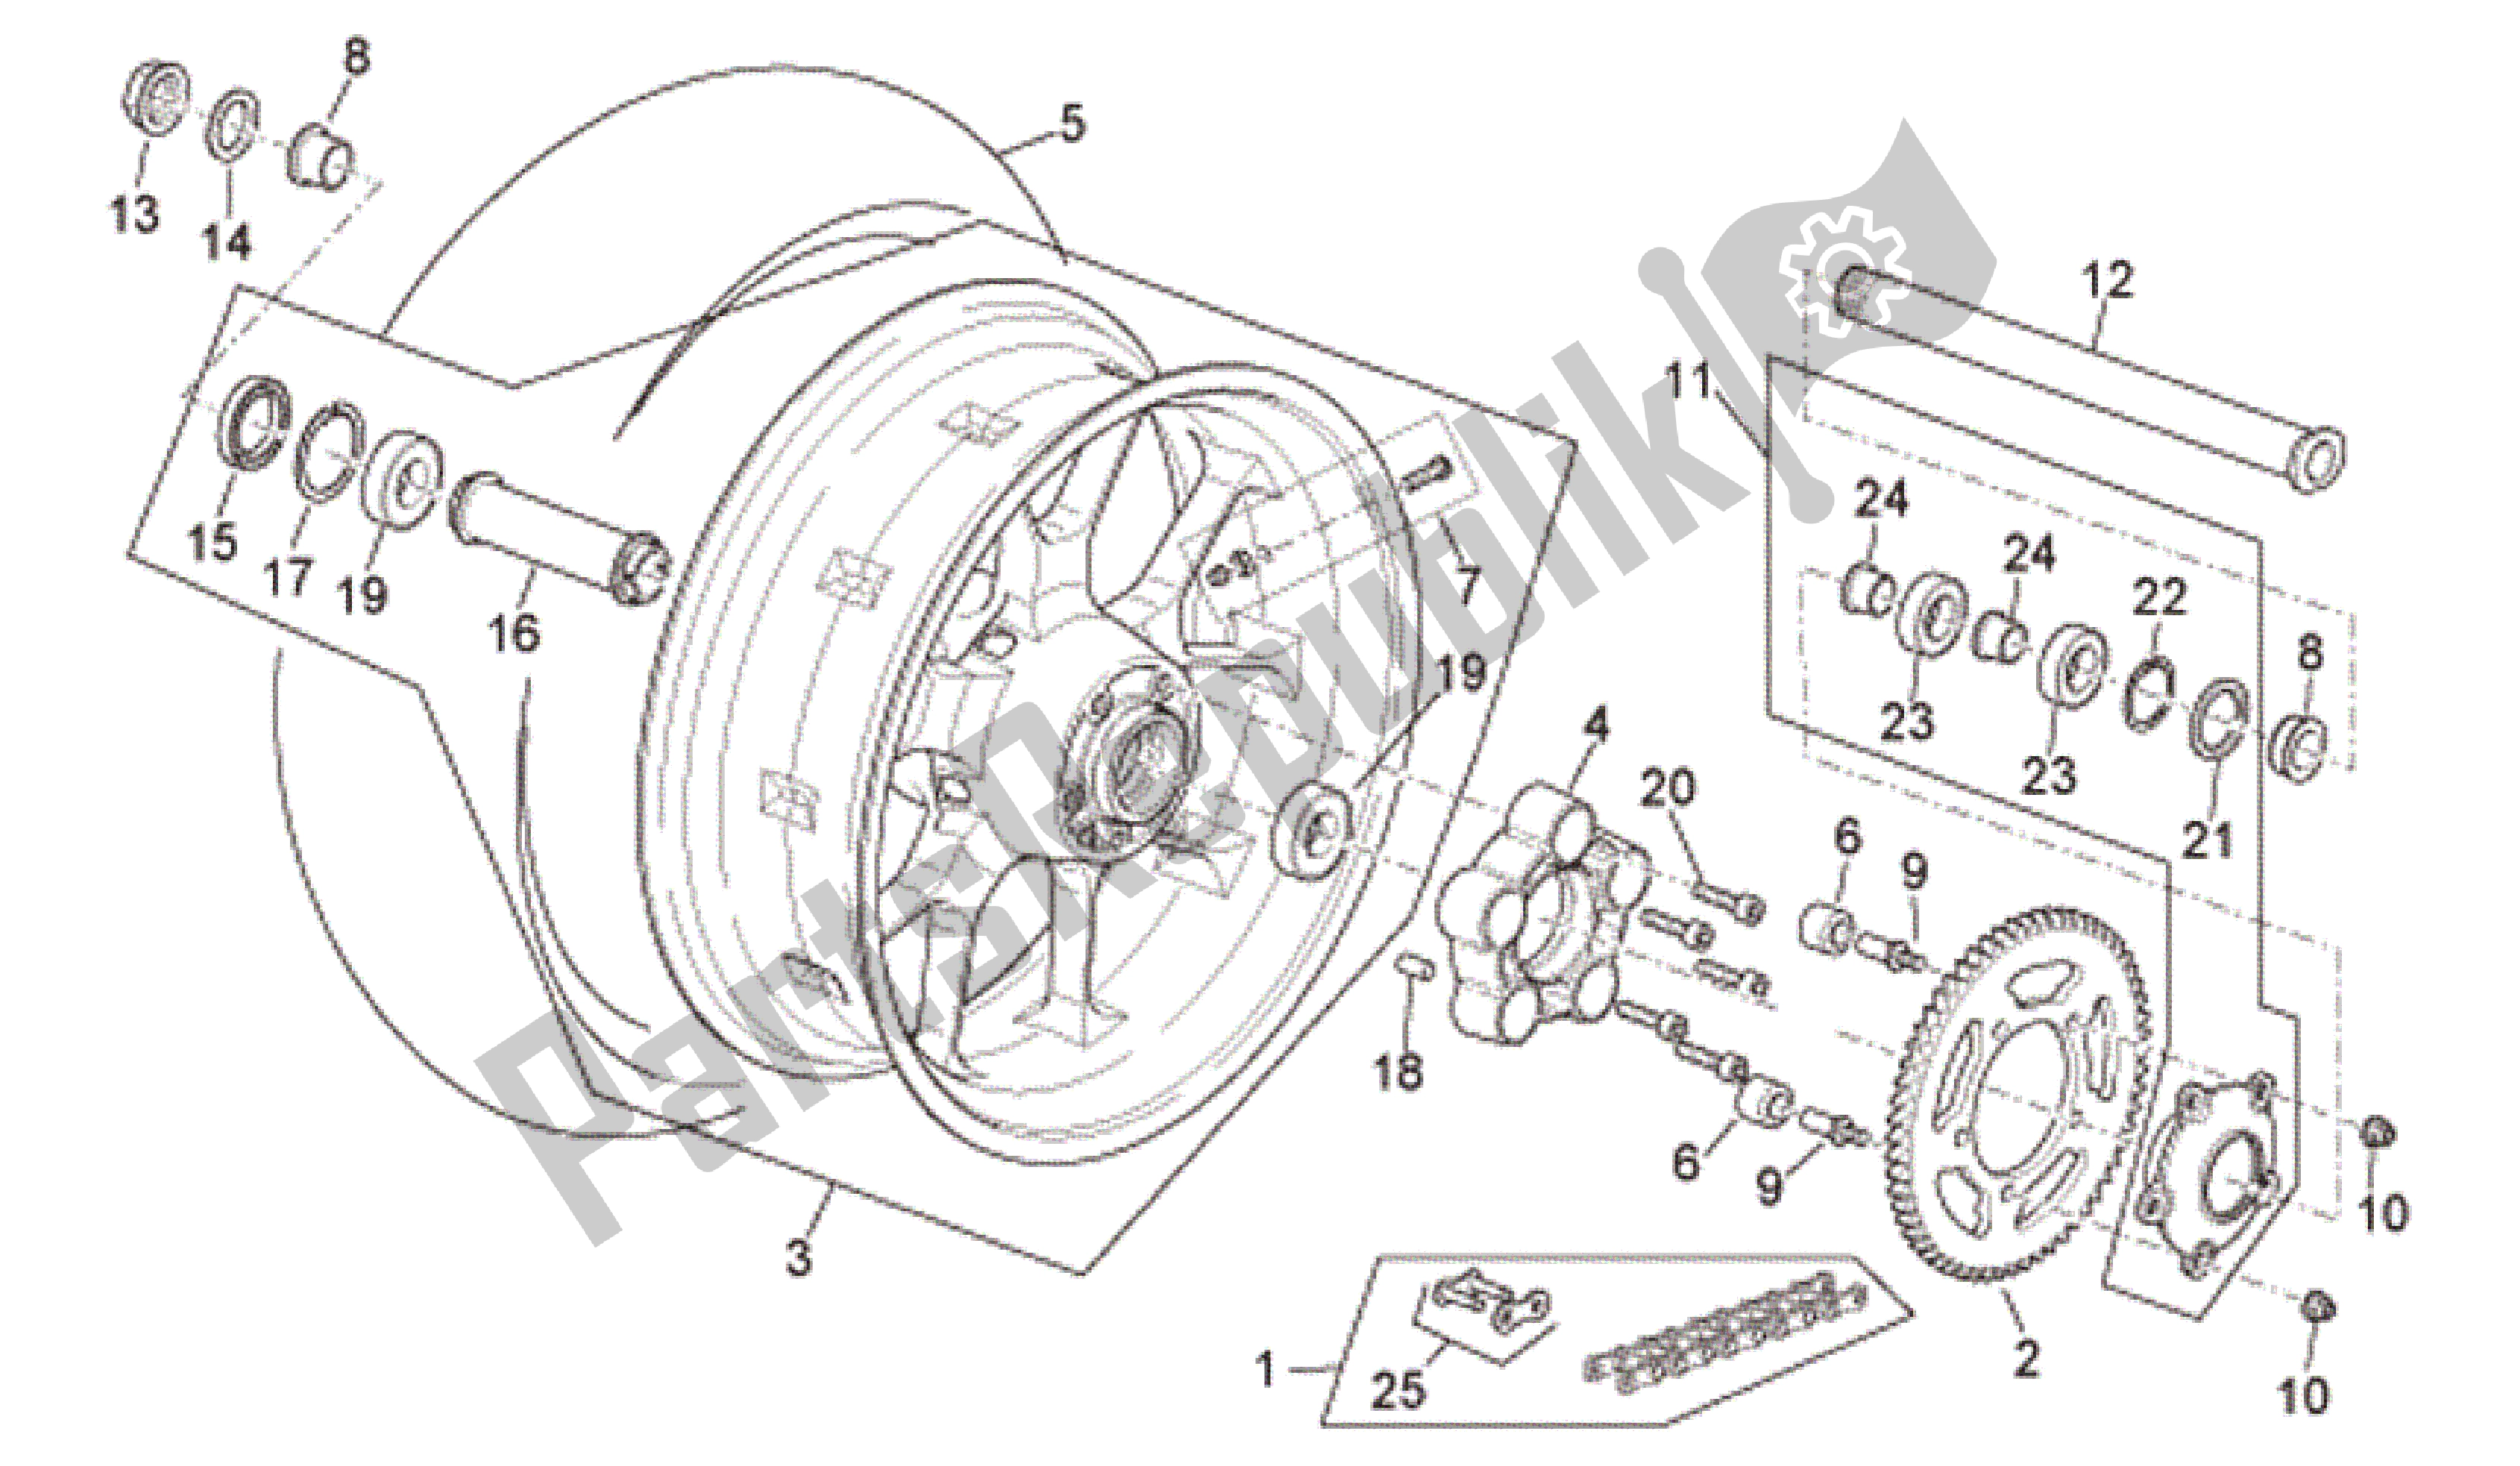 All parts for the Rear Wheel R Version of the Aprilia RSV Tuono R 3985 1000 2006 - 2009